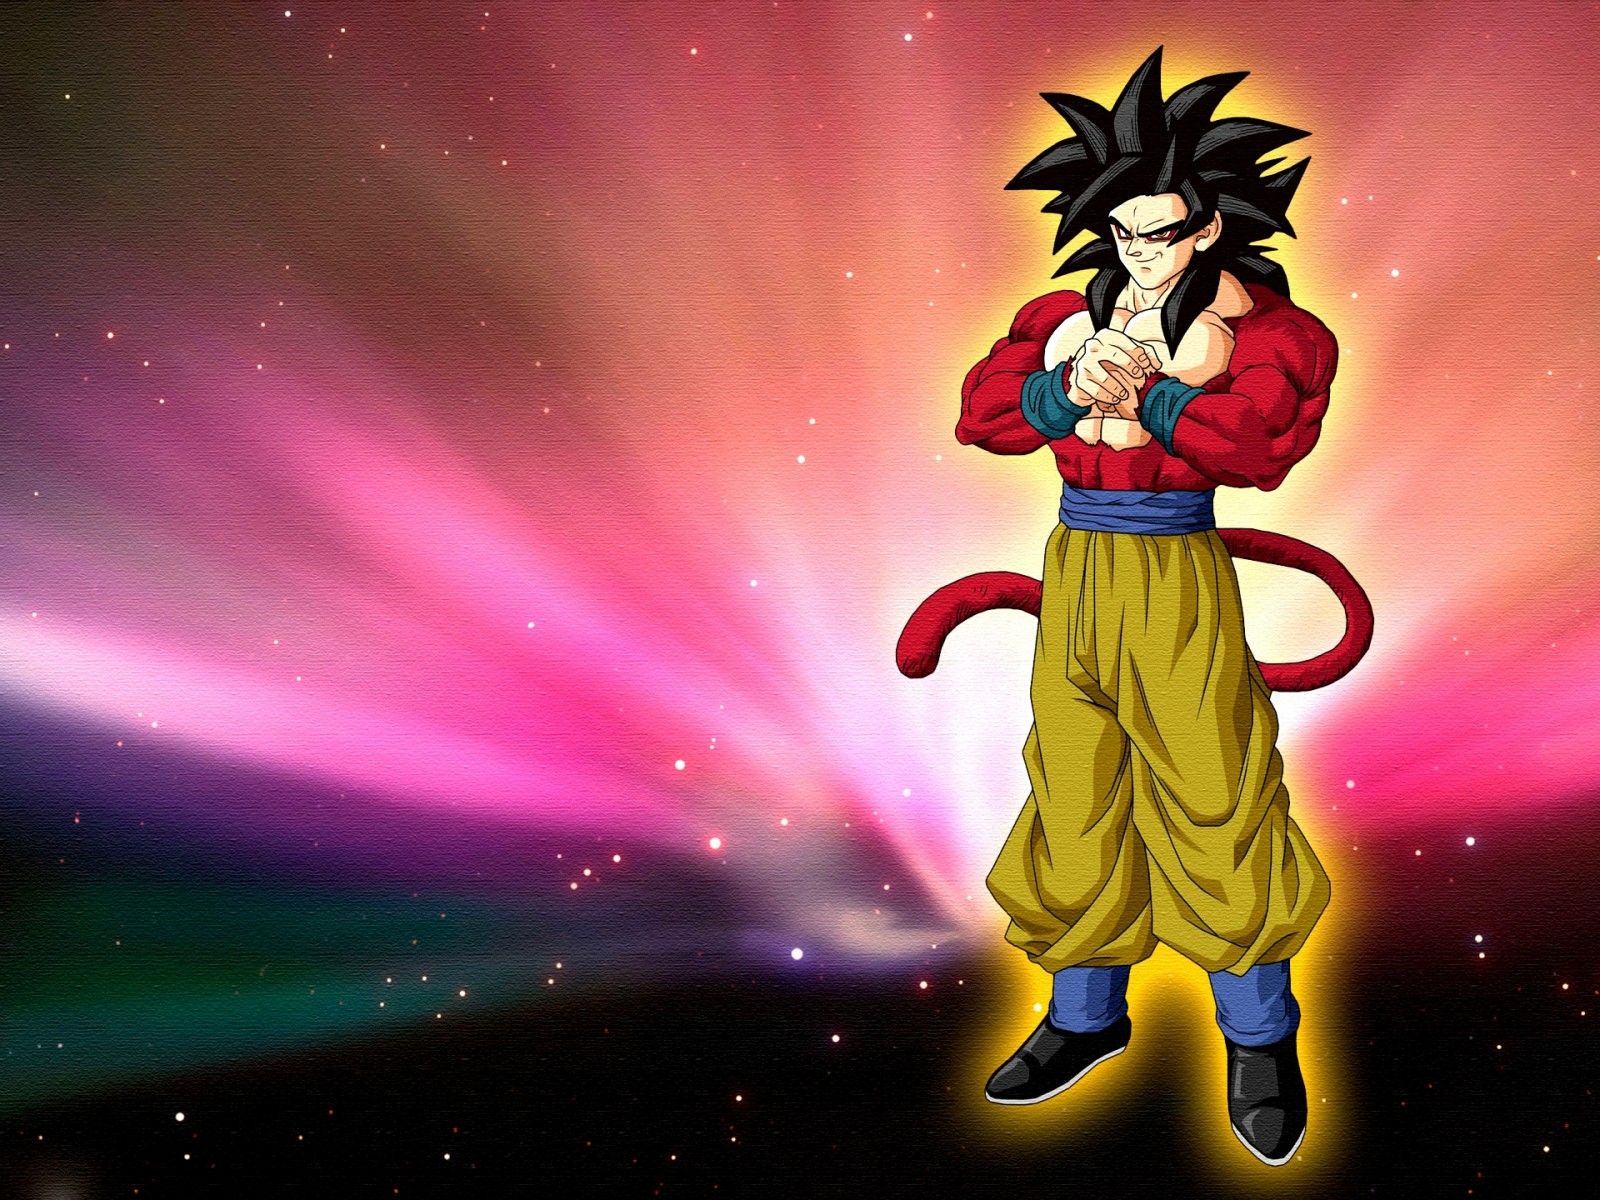 Goku Super Saiyan 4 Wallpapers  Top Free Goku Super Saiyan 4 Backgrounds   WallpaperAccess